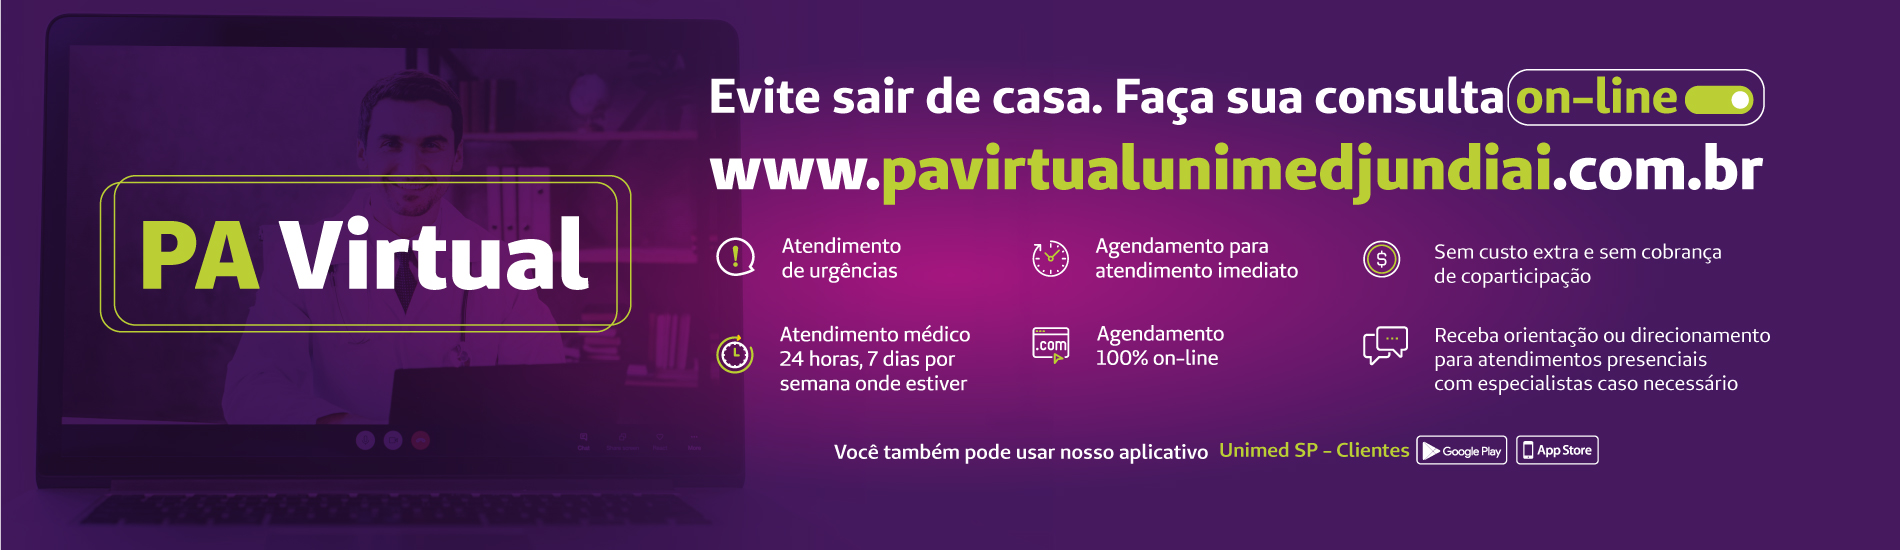 Banner clicável do topo da homepage que diz "Tire suas dúvidas antes de sair de casa, telemedicina unimed jundiaií central coronavírus"